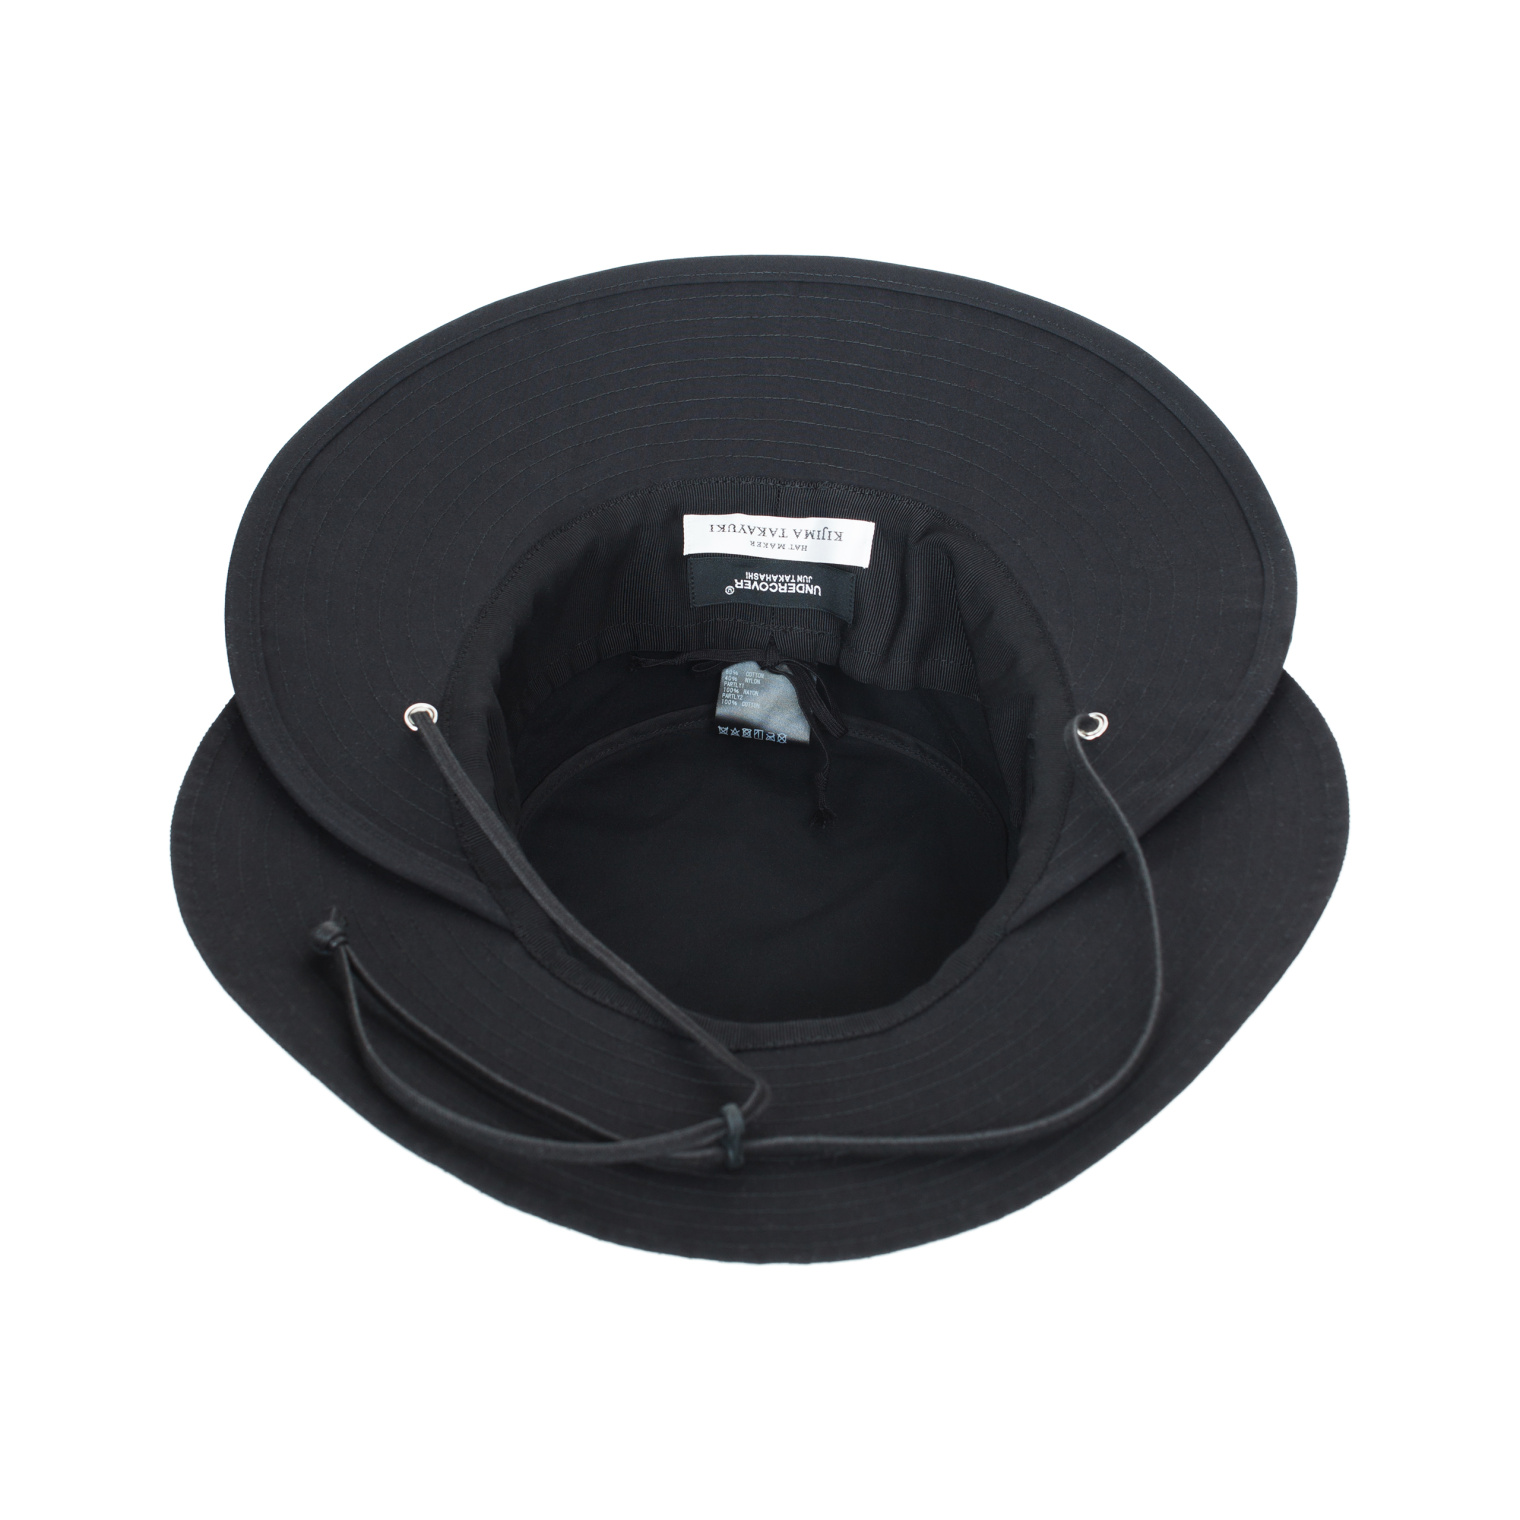 Undercover Black bucket hat